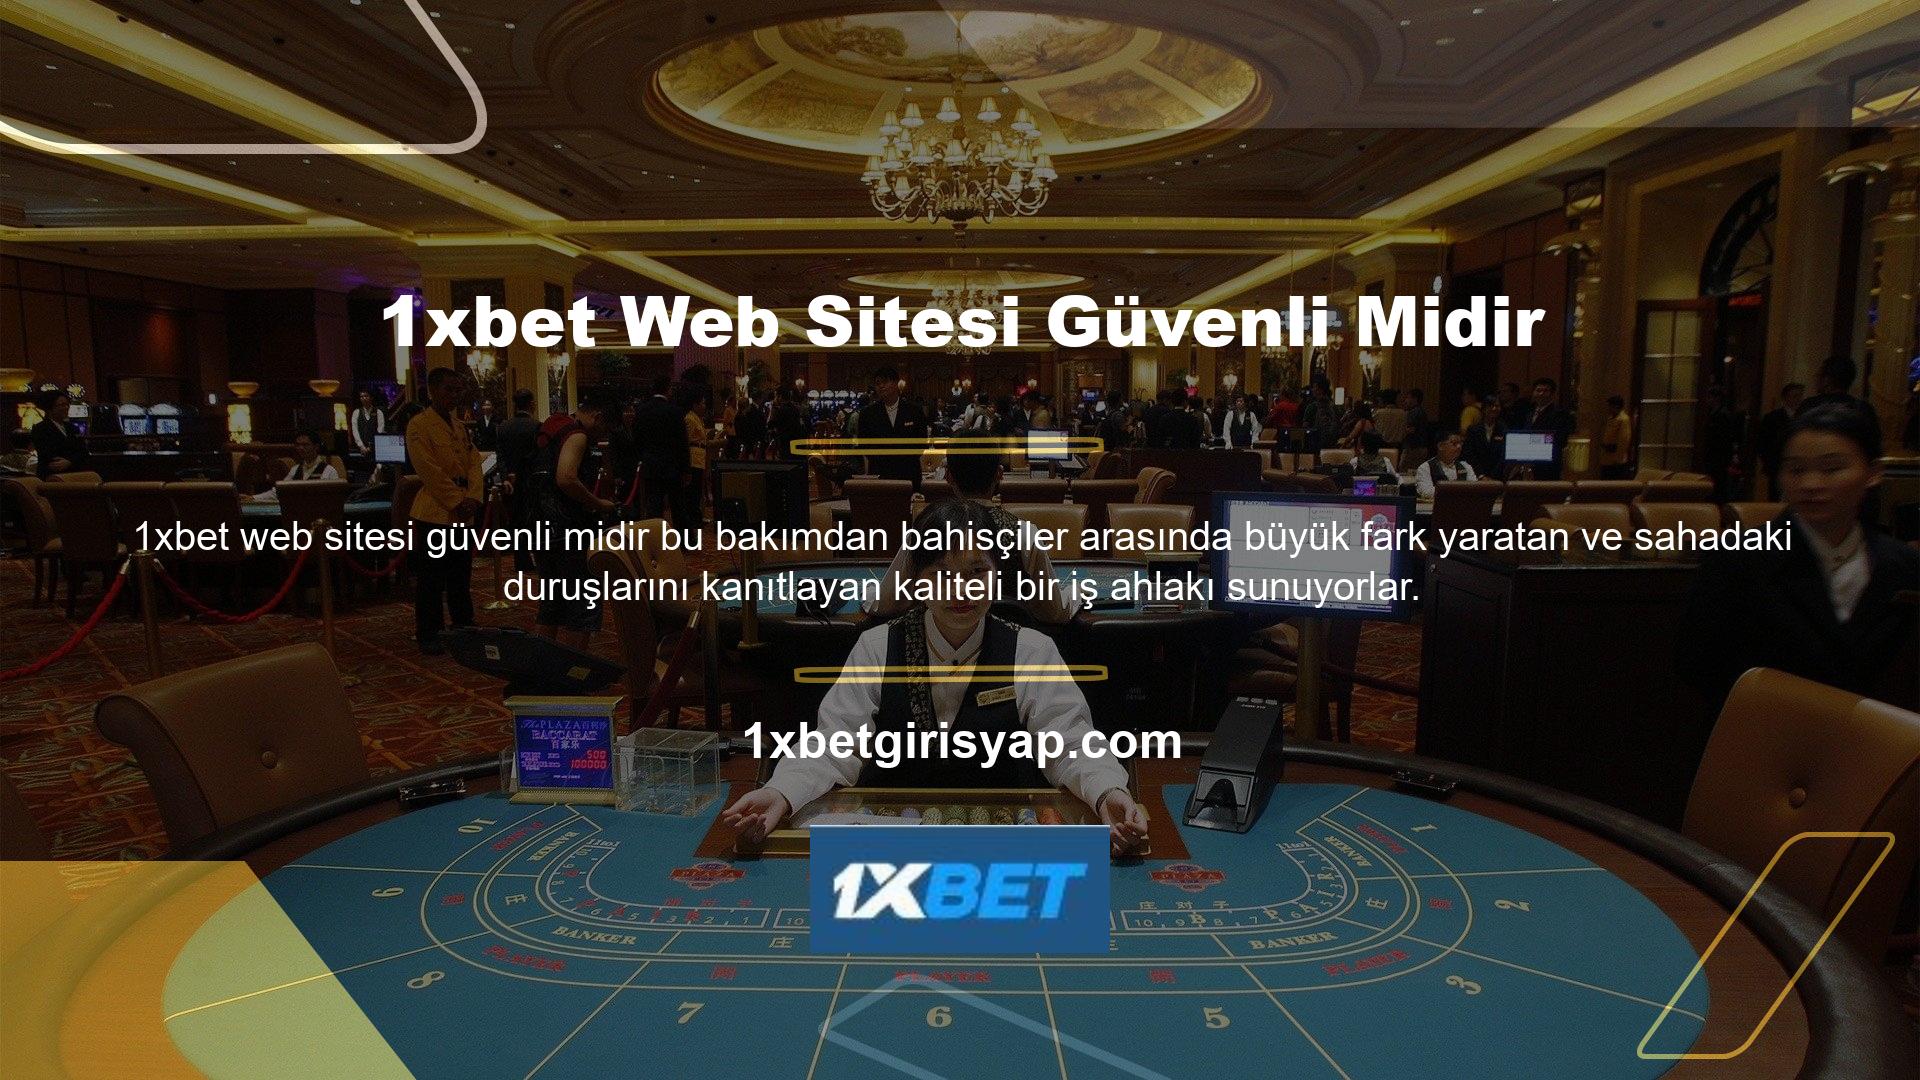 1xbet Casino web sitesi güvenli midir? Casino web siteleri casino sektörünün bir parçasıdır ancak uzun yıllardır tüccar olarak kabul edilmektedir